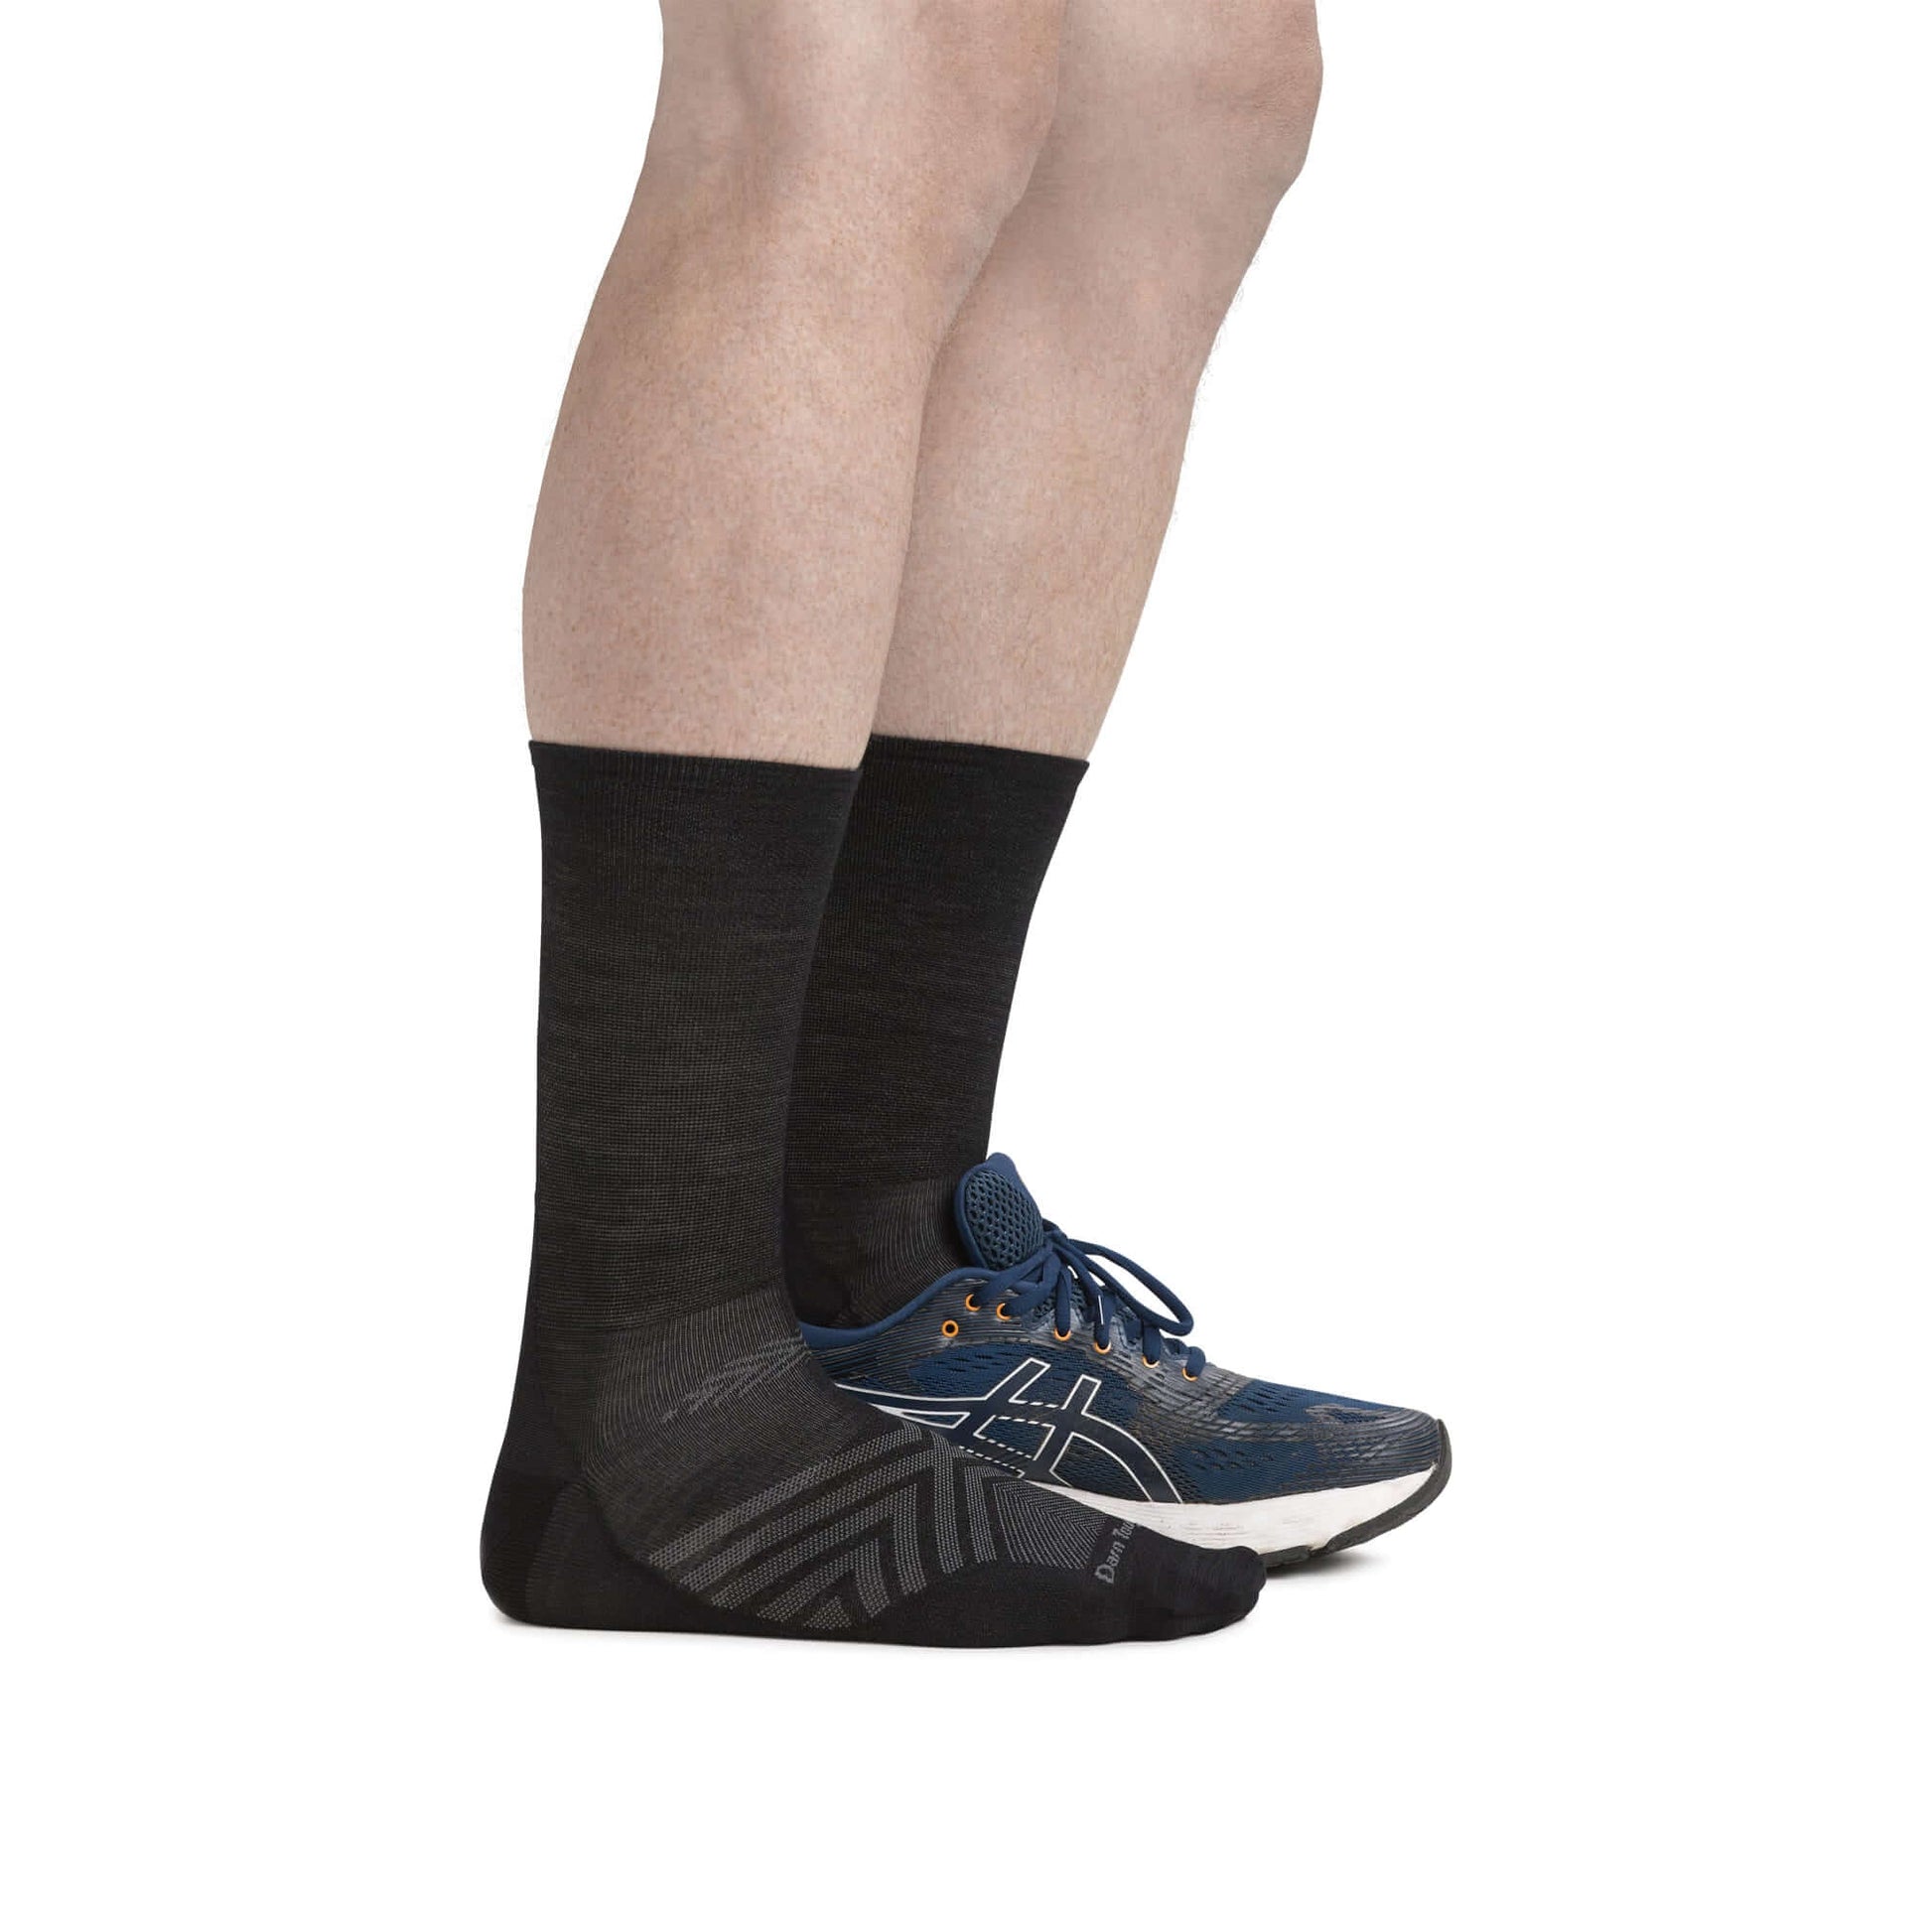 Darn Tough Calcetines de media caña de running y trail de lana merina. Mod. Run 1035 color Color: Black